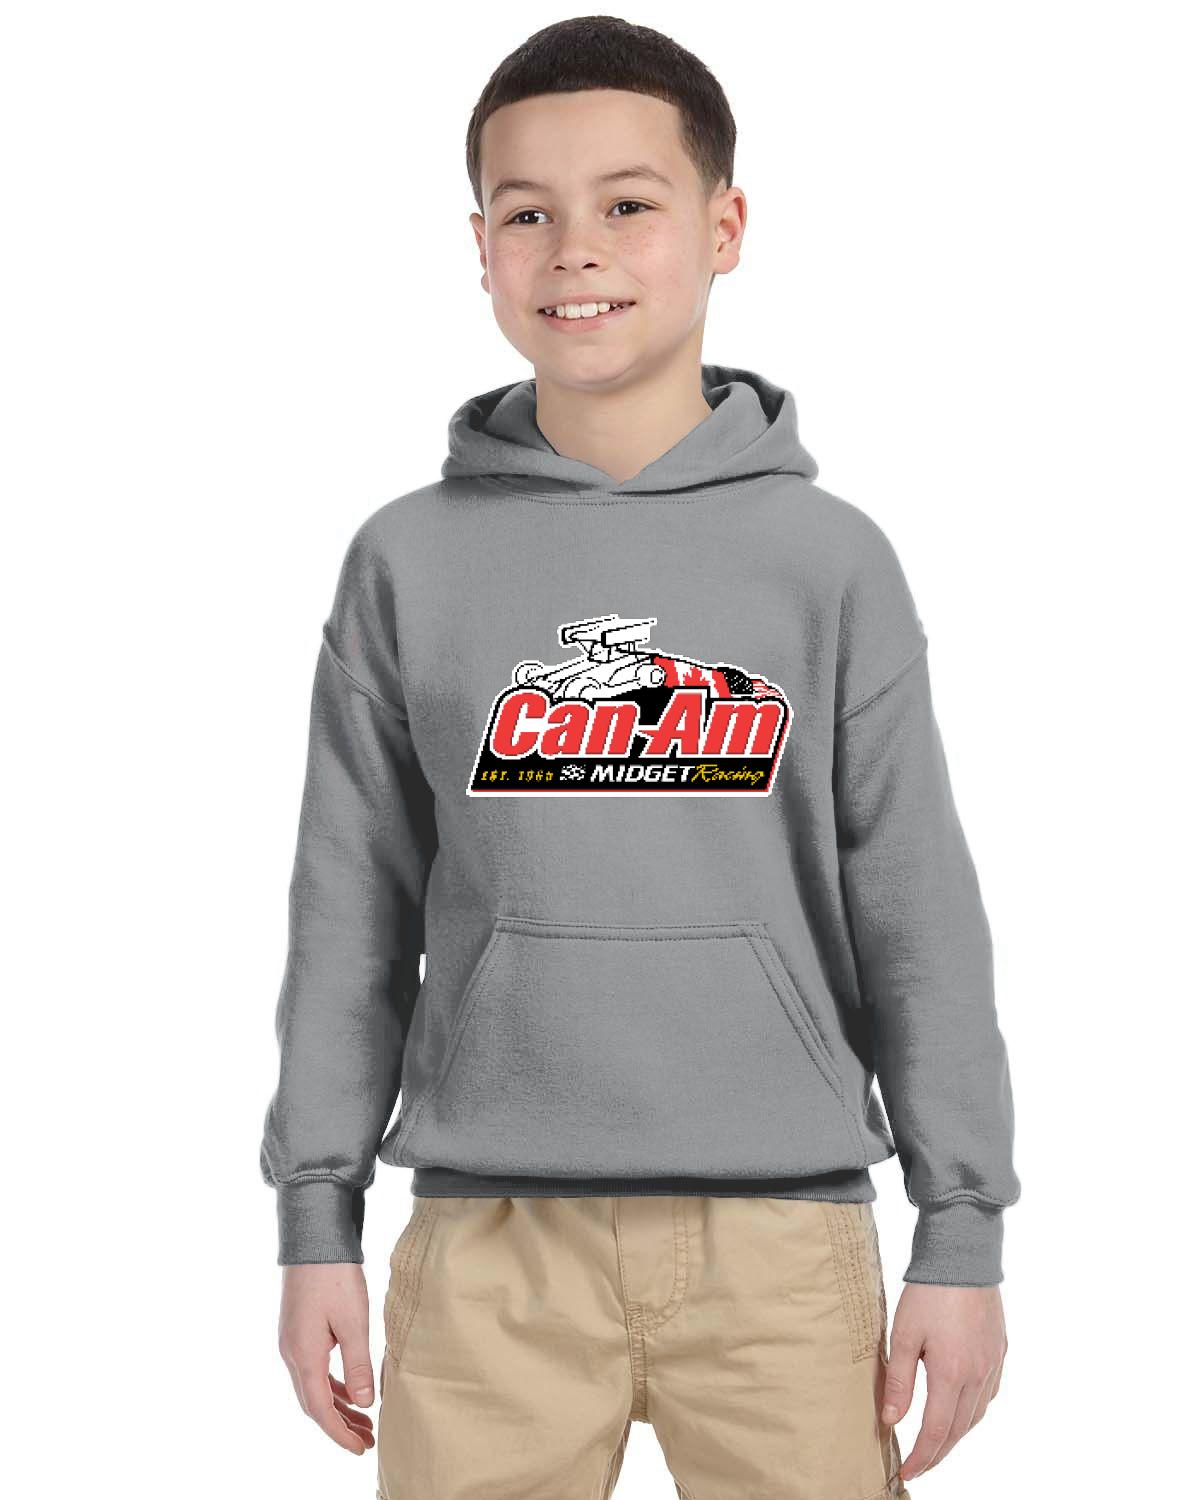 Can-Am Midget Racing Kid's Hoodie